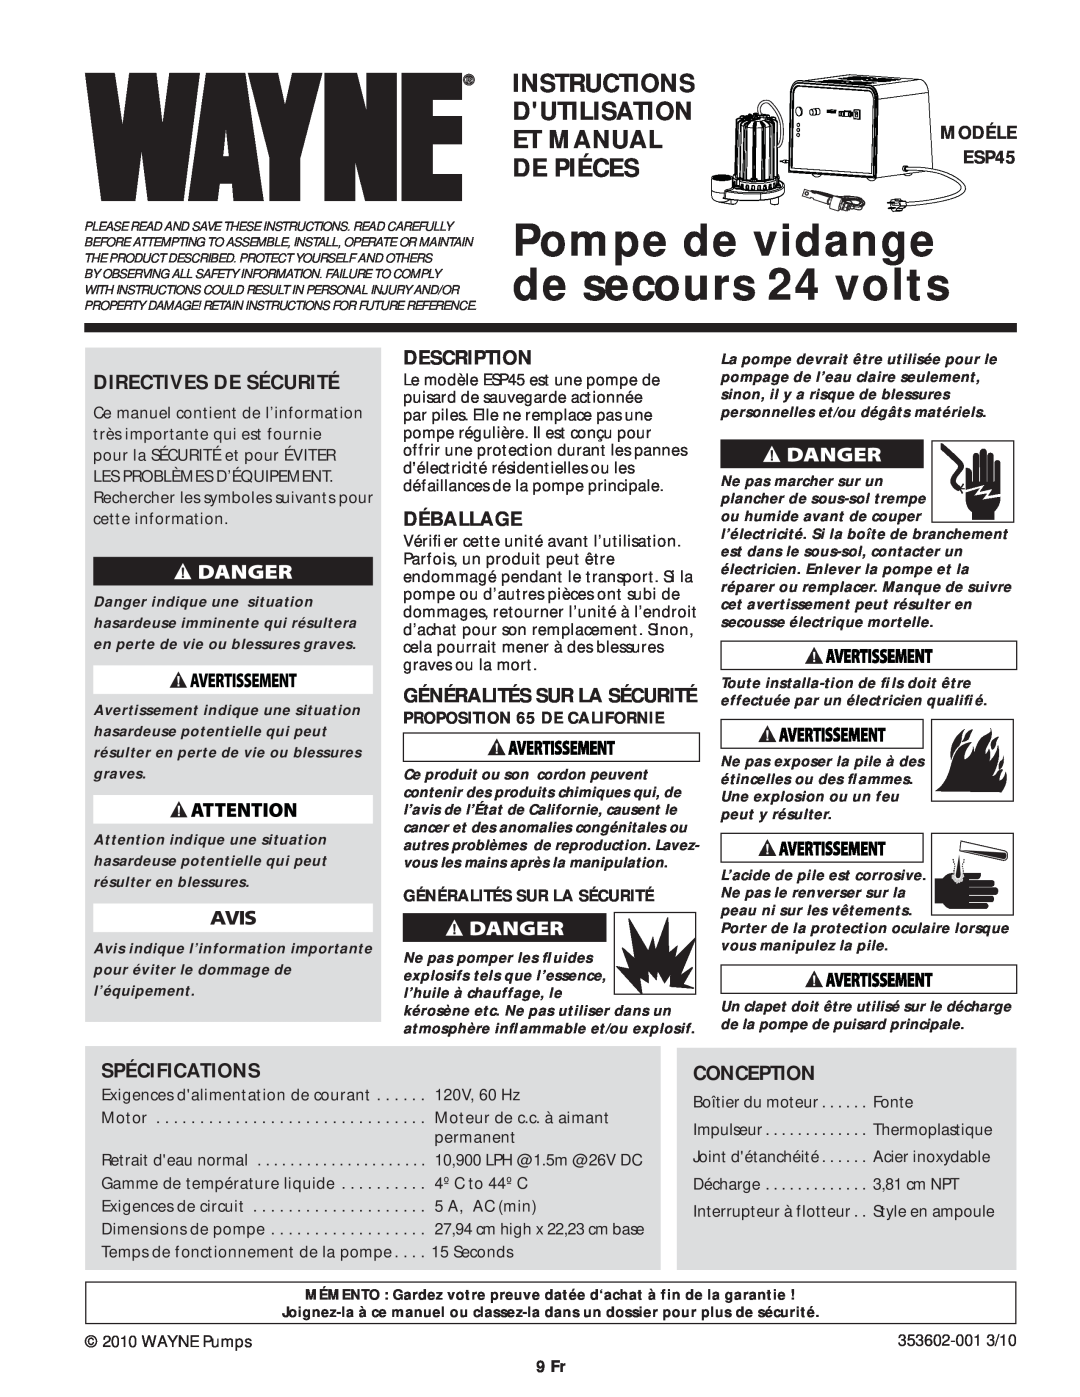 Wayne ESP45 Pompe de vidange de secours 24 volts, Directives De Sécurité, Déballage, Spécifications, Conception, 9 Fr 